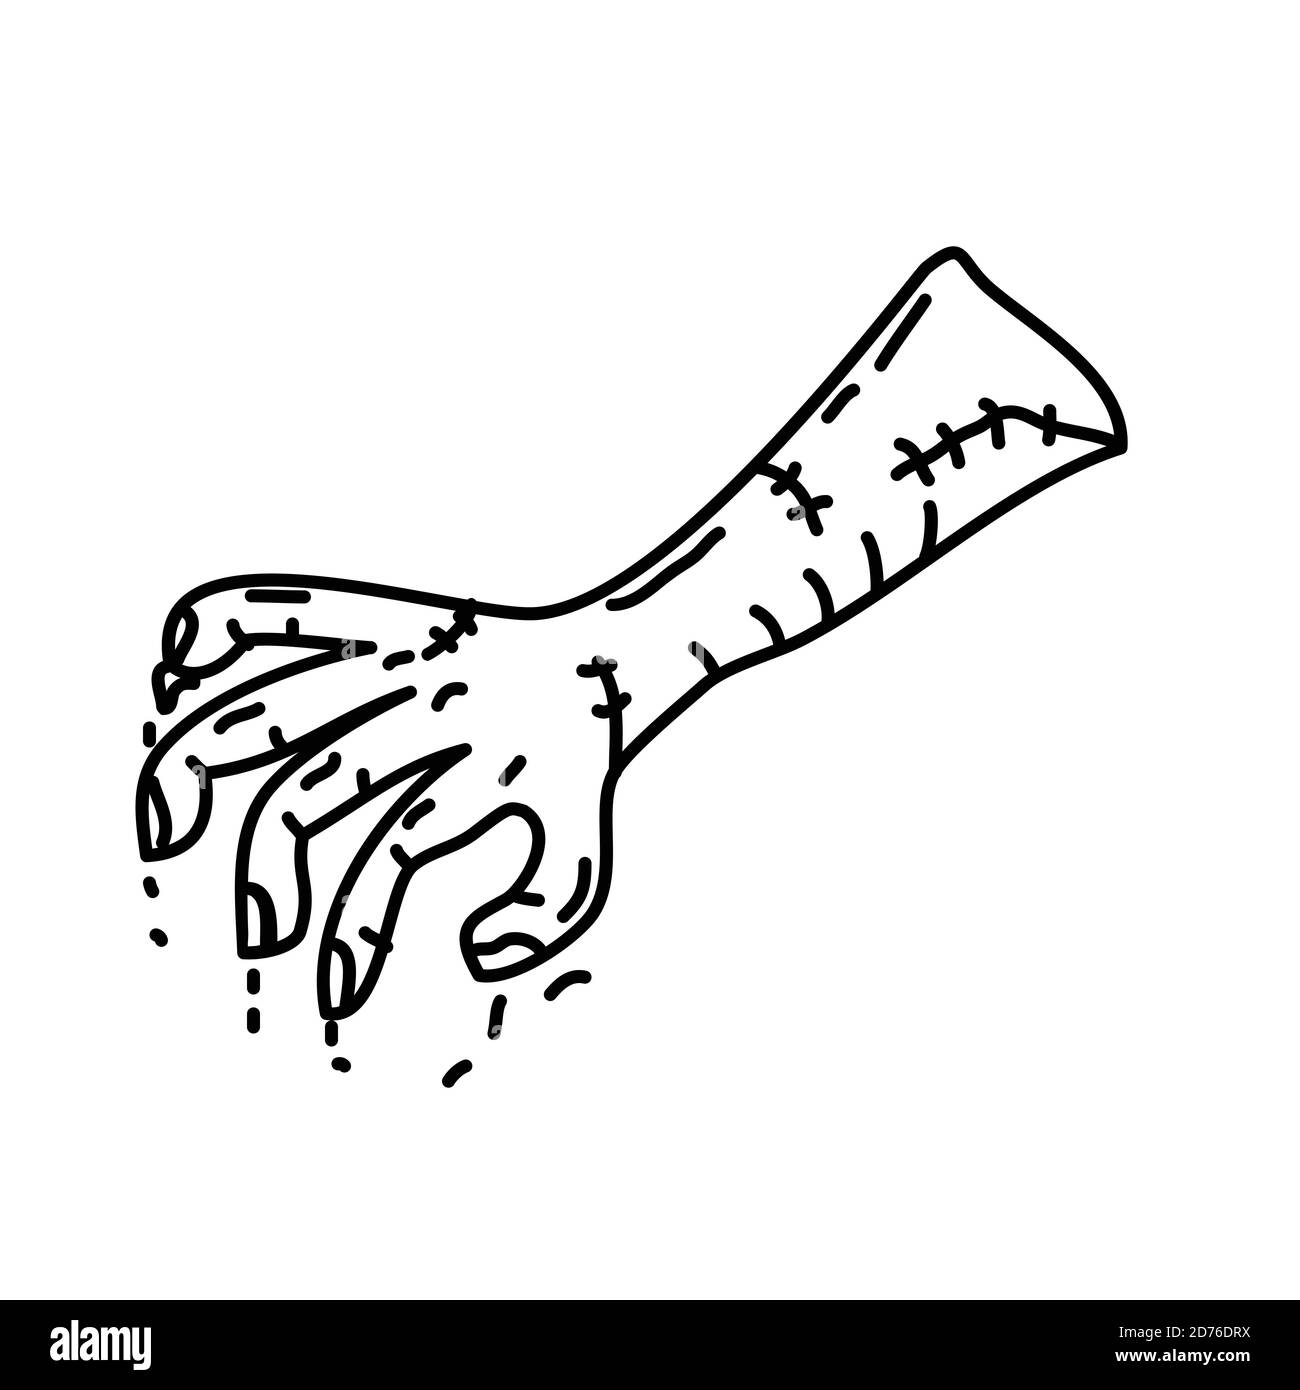 Vecteur d'icône zombie Stump. Style d'icône Doodle dessiné à la main ou Black Outline Illustration de Vecteur